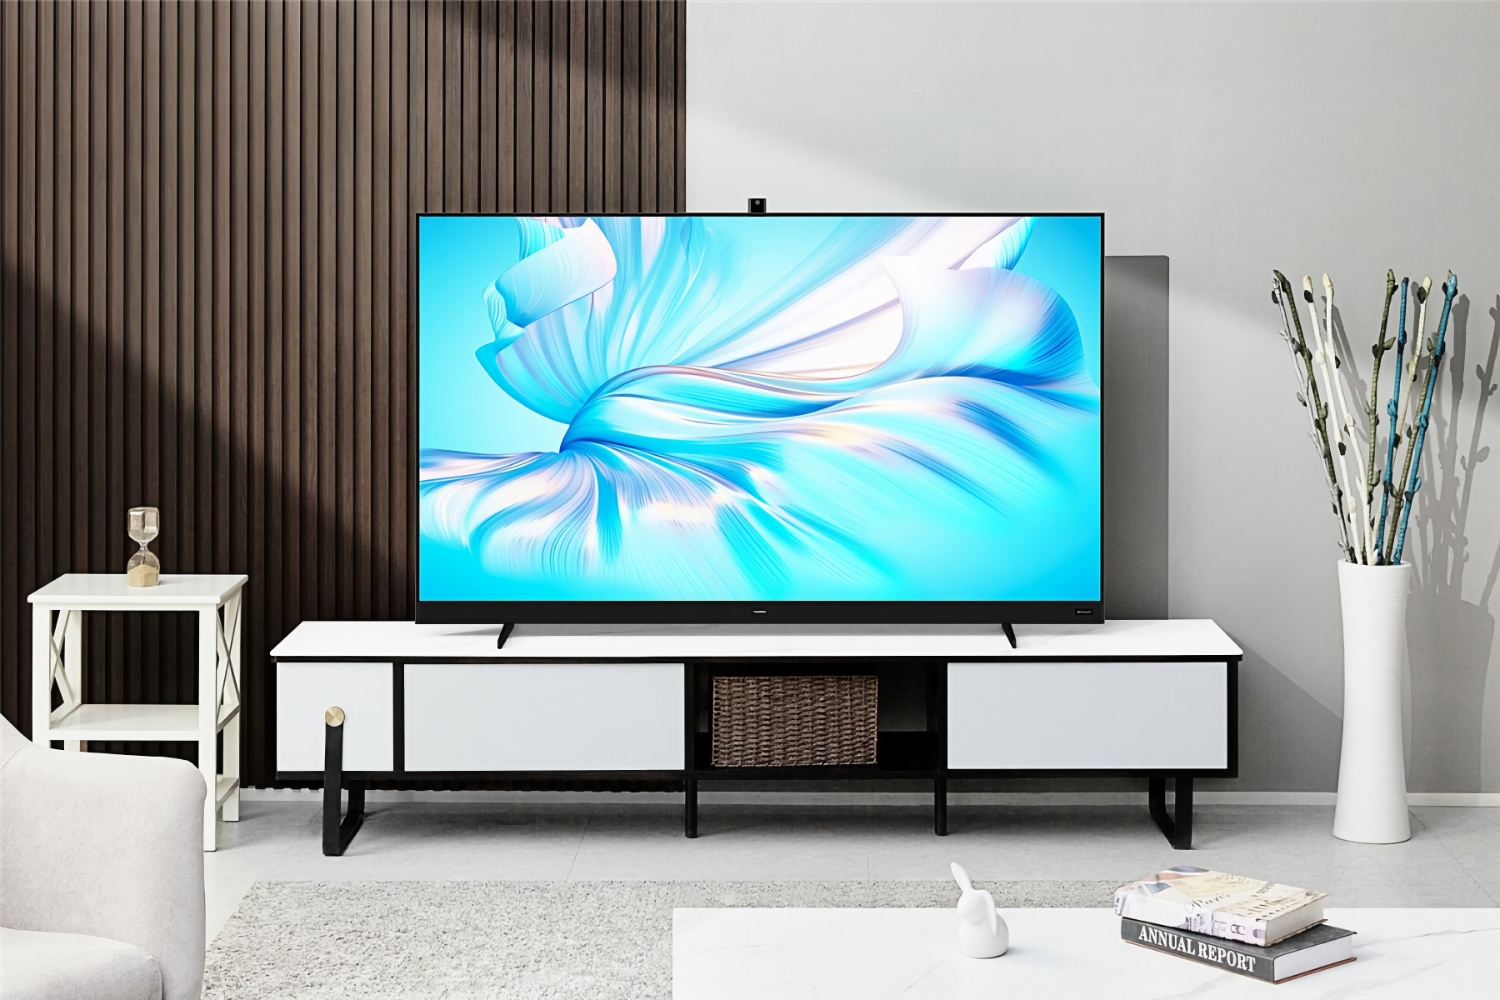 Huawei stellt am 29. Juli den Smart Screen V75 Super Smart TV mit Mini-LED-Bildschirm und HarmonyOS vor